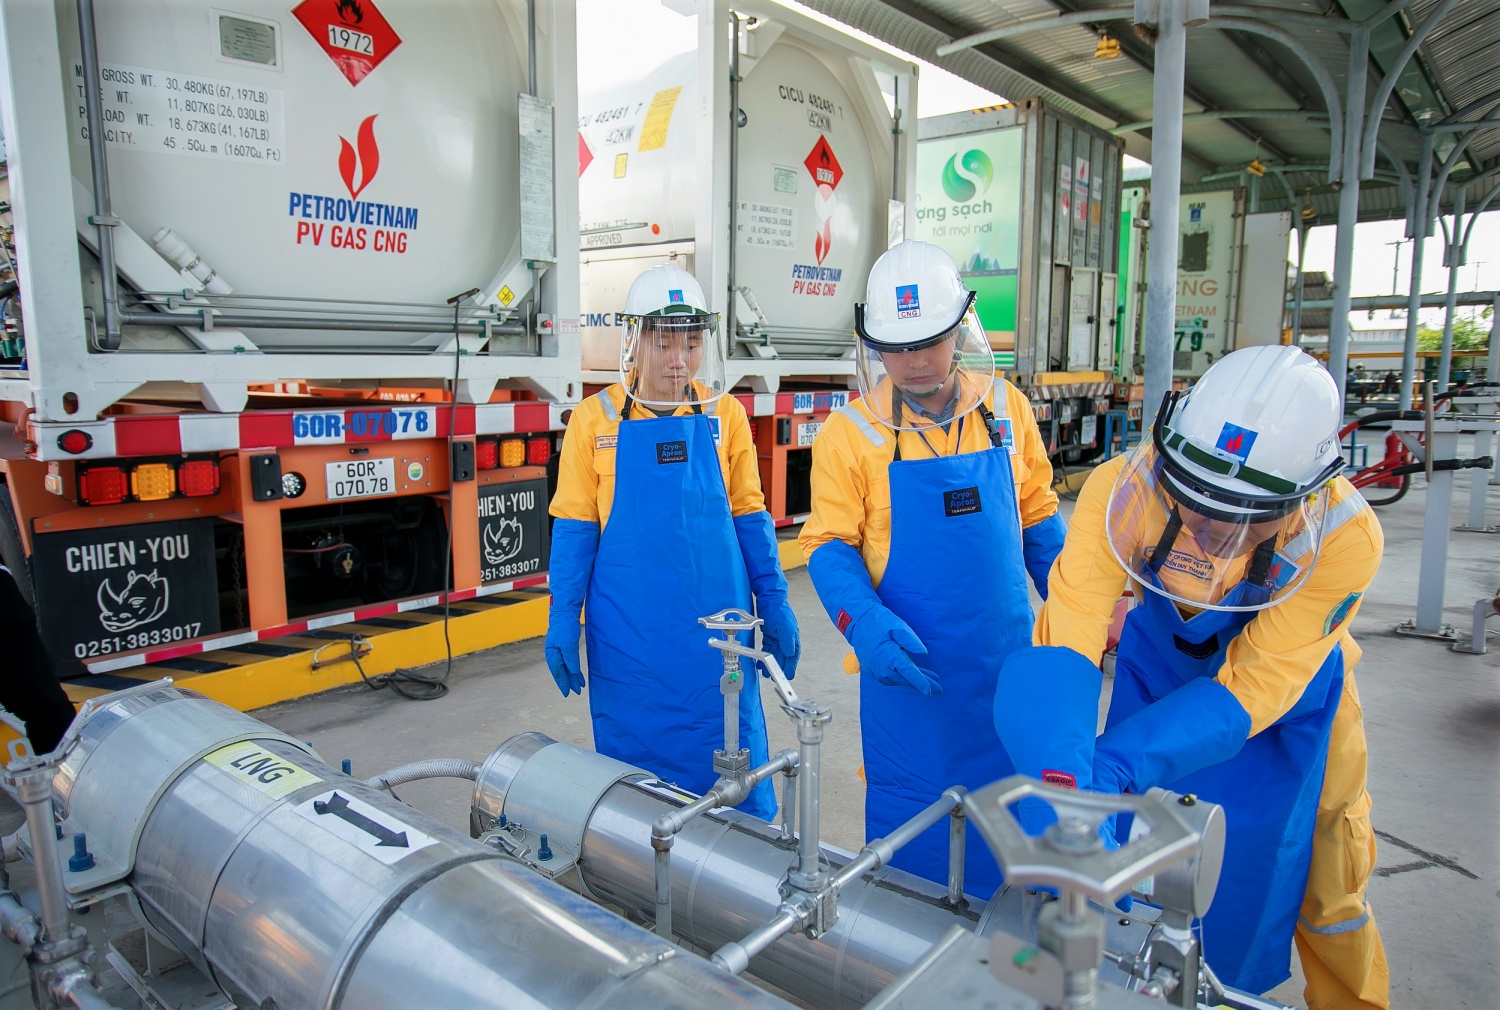 PV GAS CNG bắt đầu cung cấp LNG tới khách hàng”